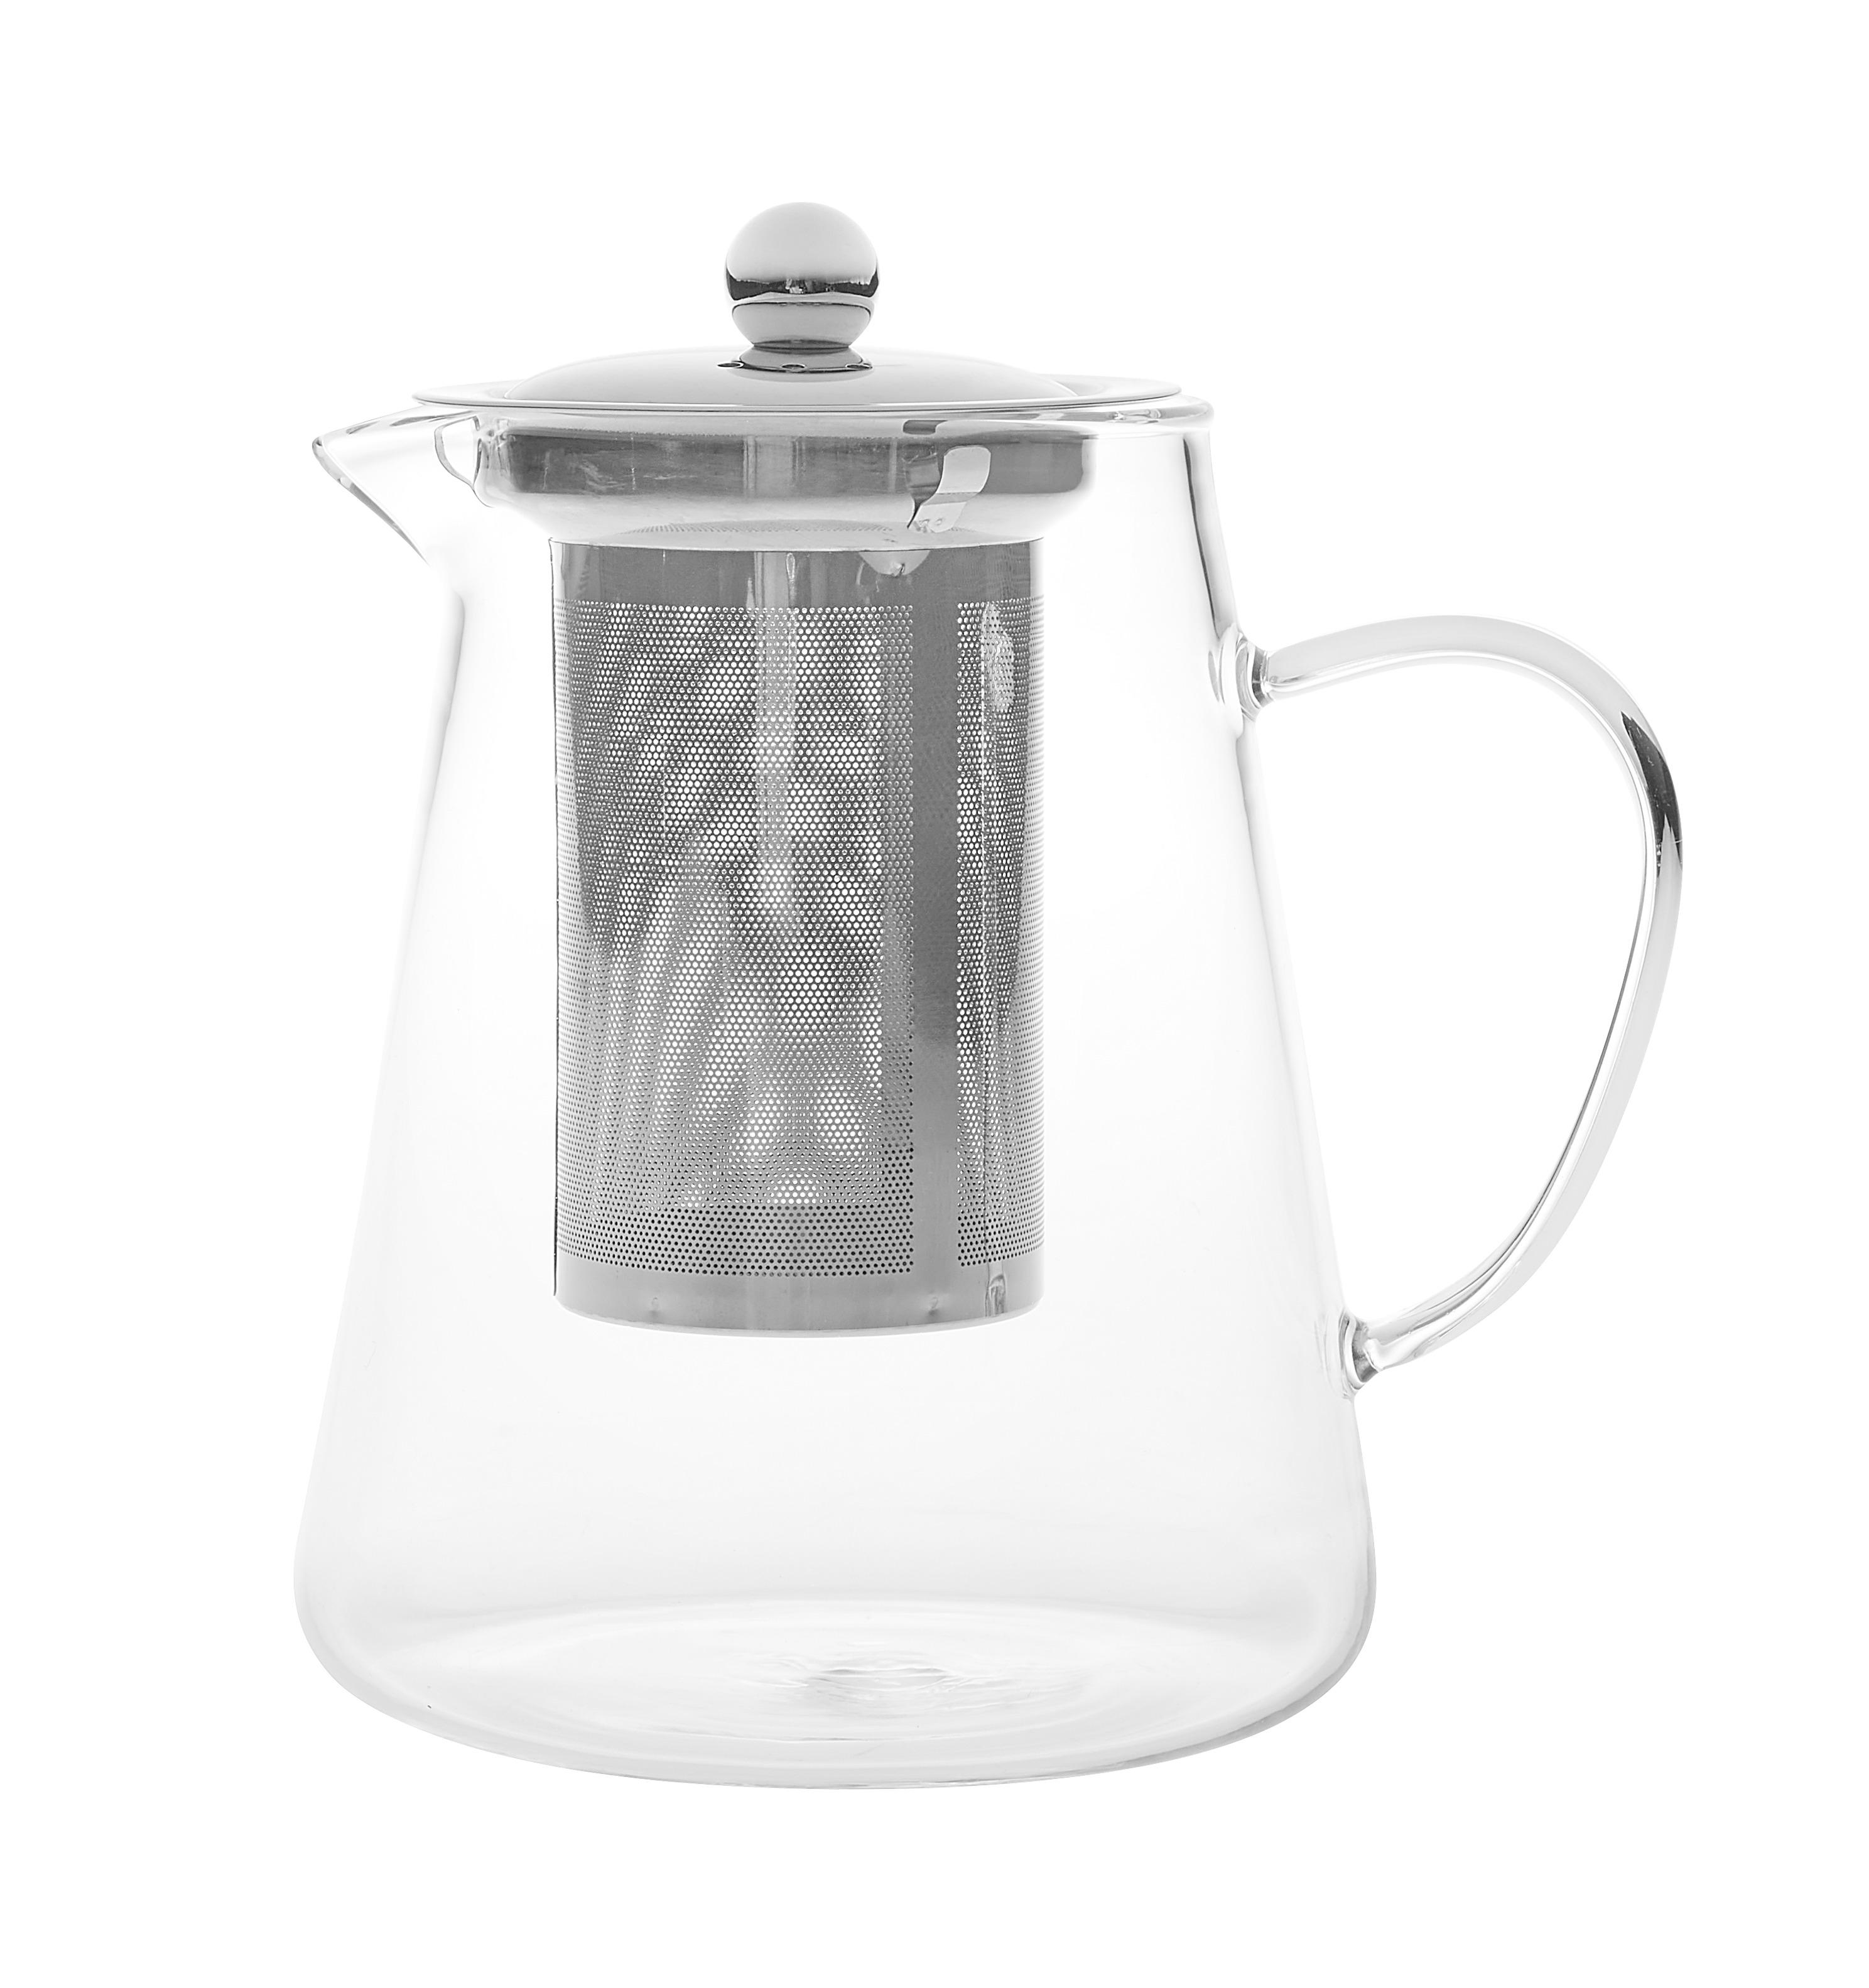 Čajová Konvice Tea Fusion - čiré/barvy nerez oceli, Moderní, kov/sklo (11,5/17cm) - Premium Living